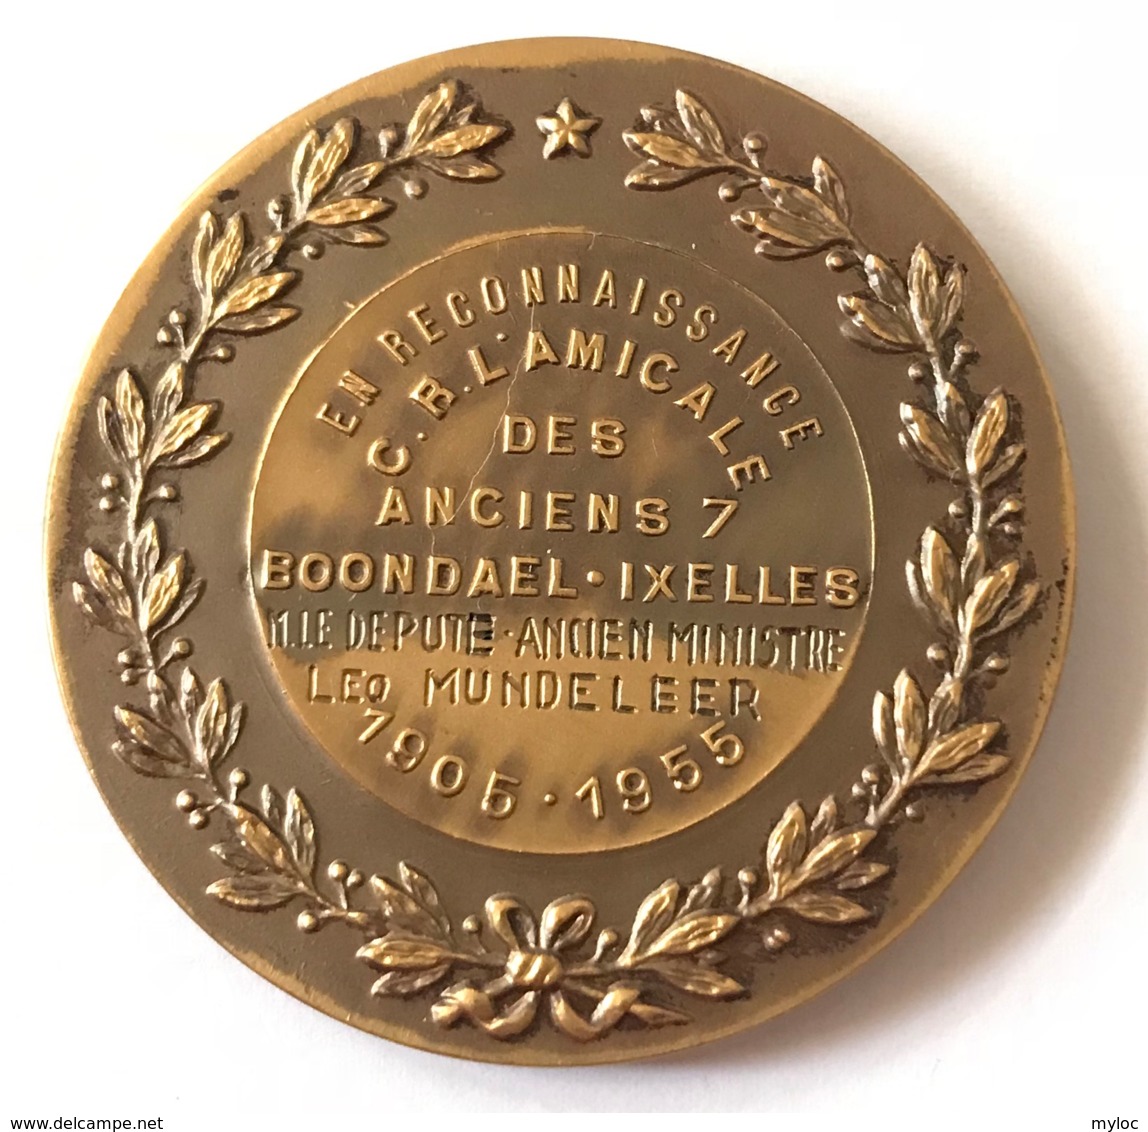 Médaille. En Reconnaissance Des 7 Anciens. C.R. L'Amicale Boondael - Ixelles. 1905 - 1955 - Unternehmen